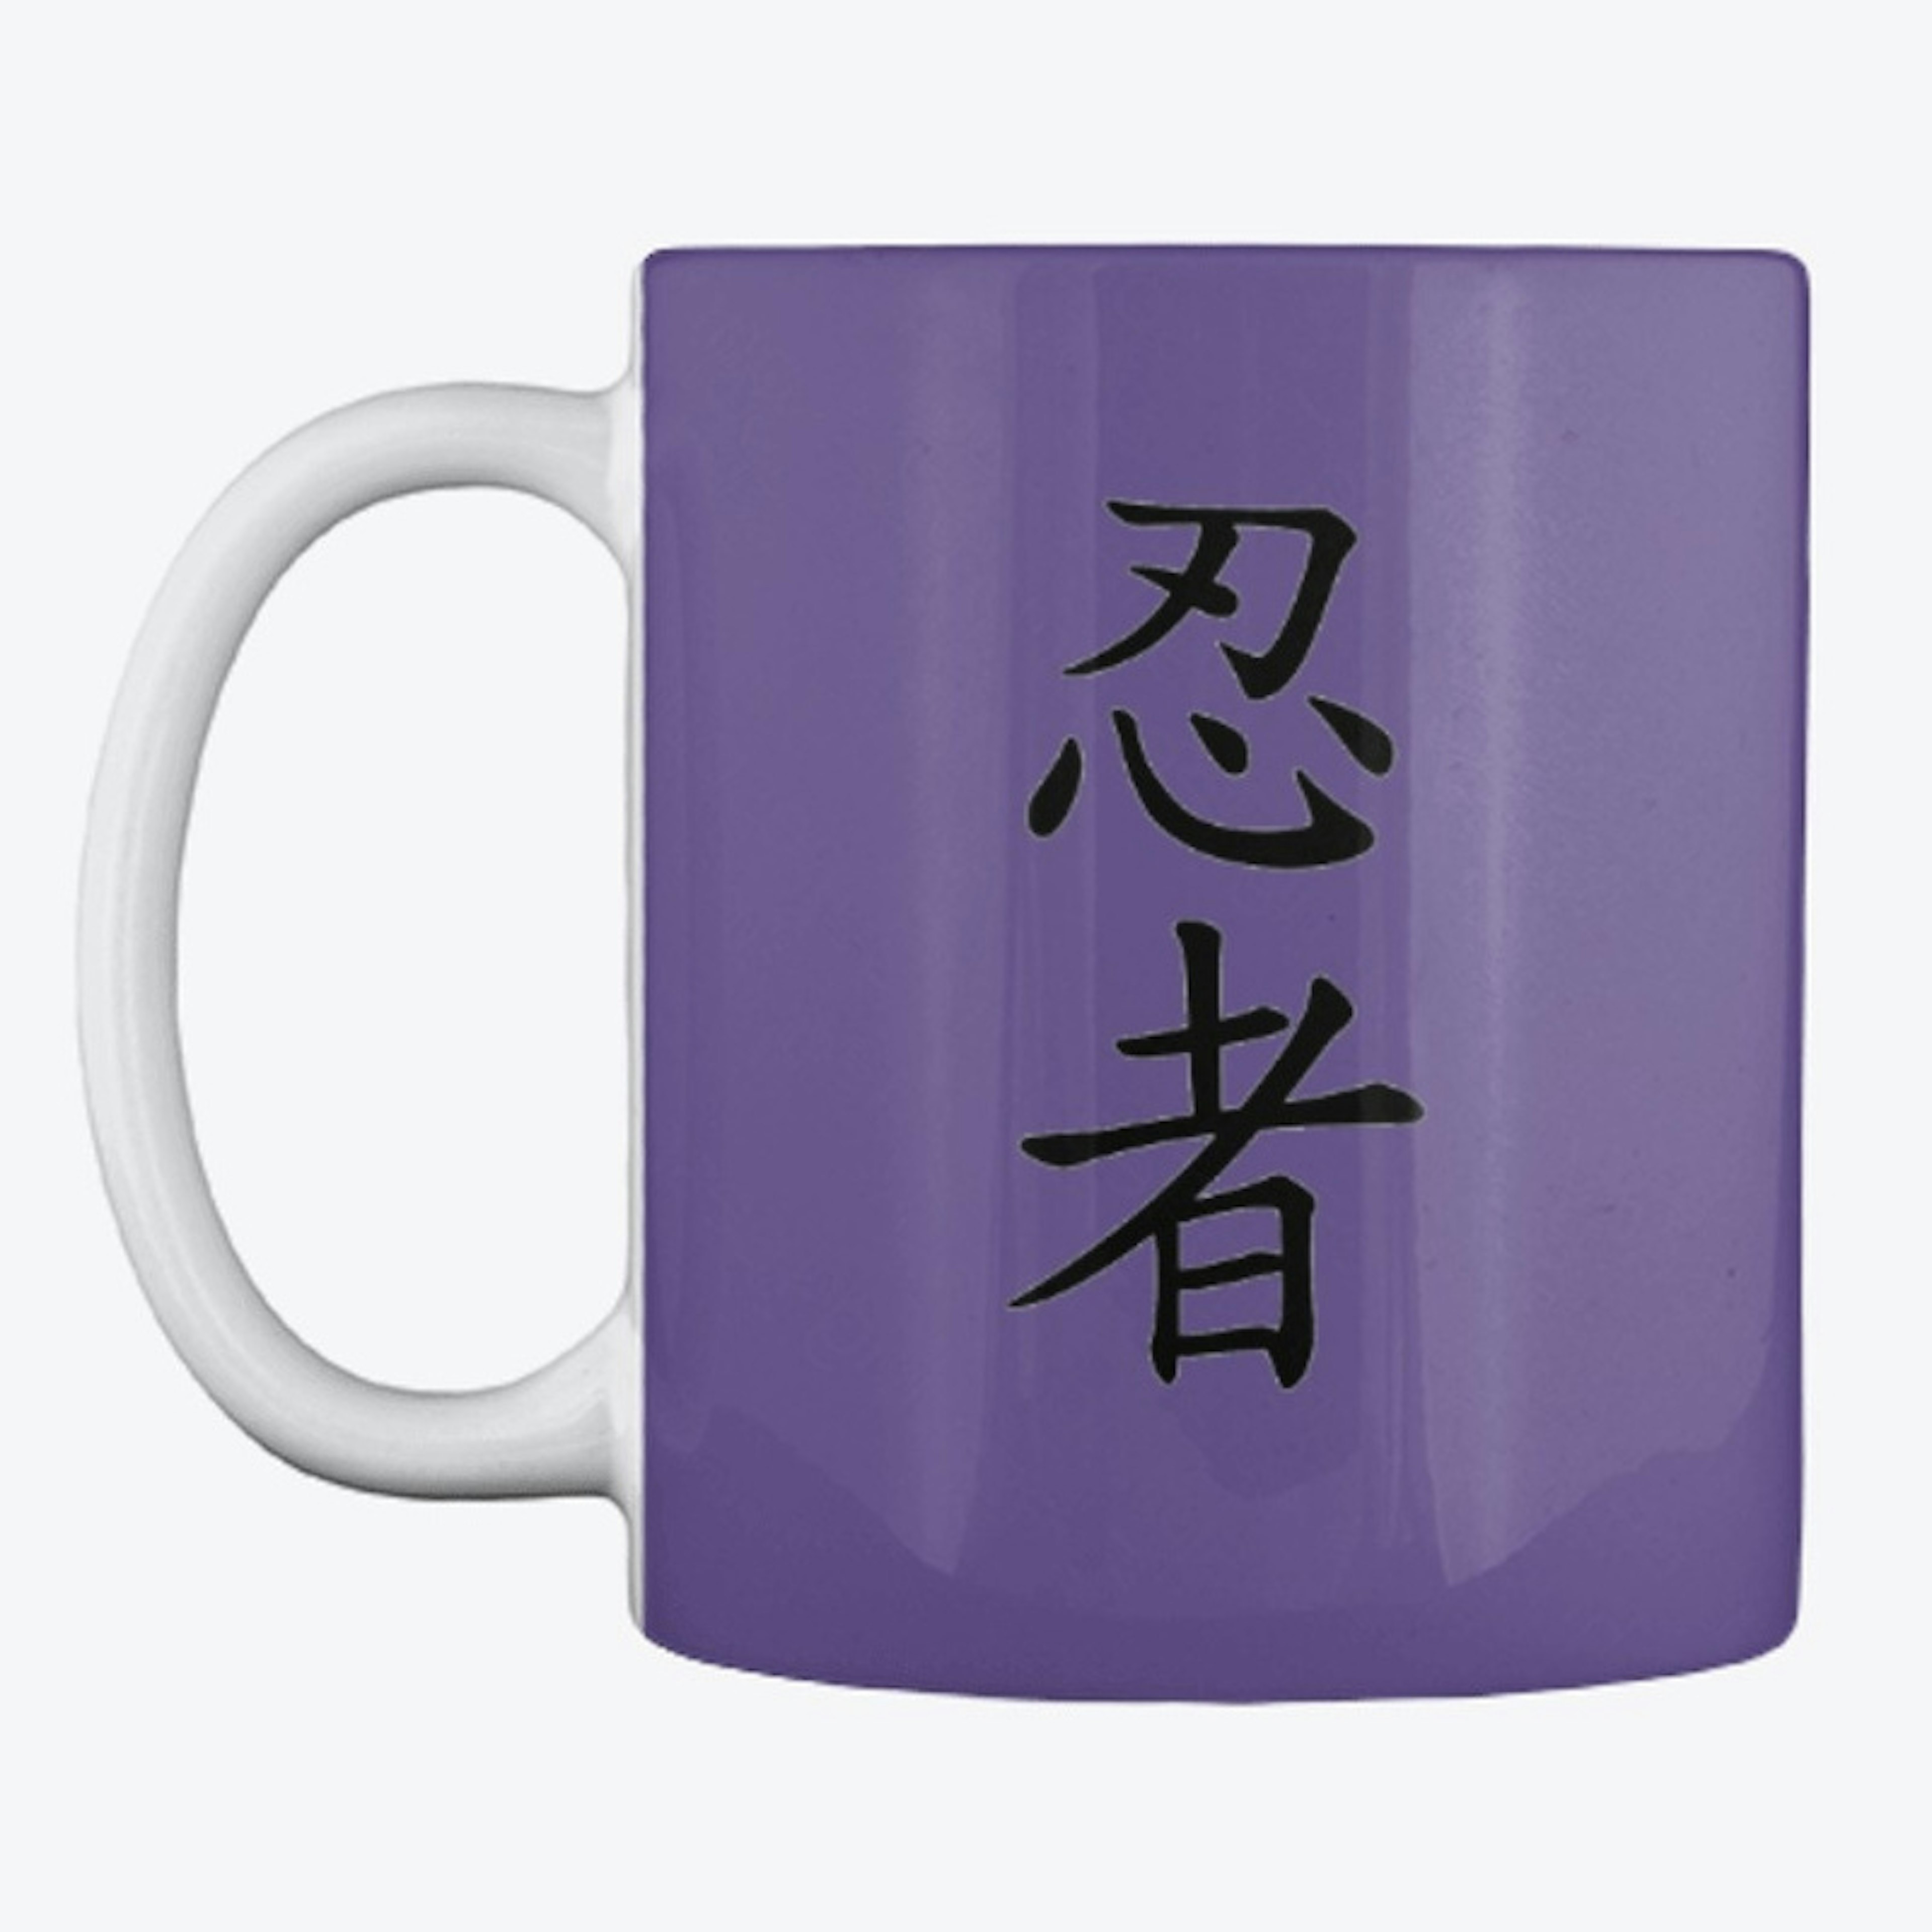 Ninja kanji mug